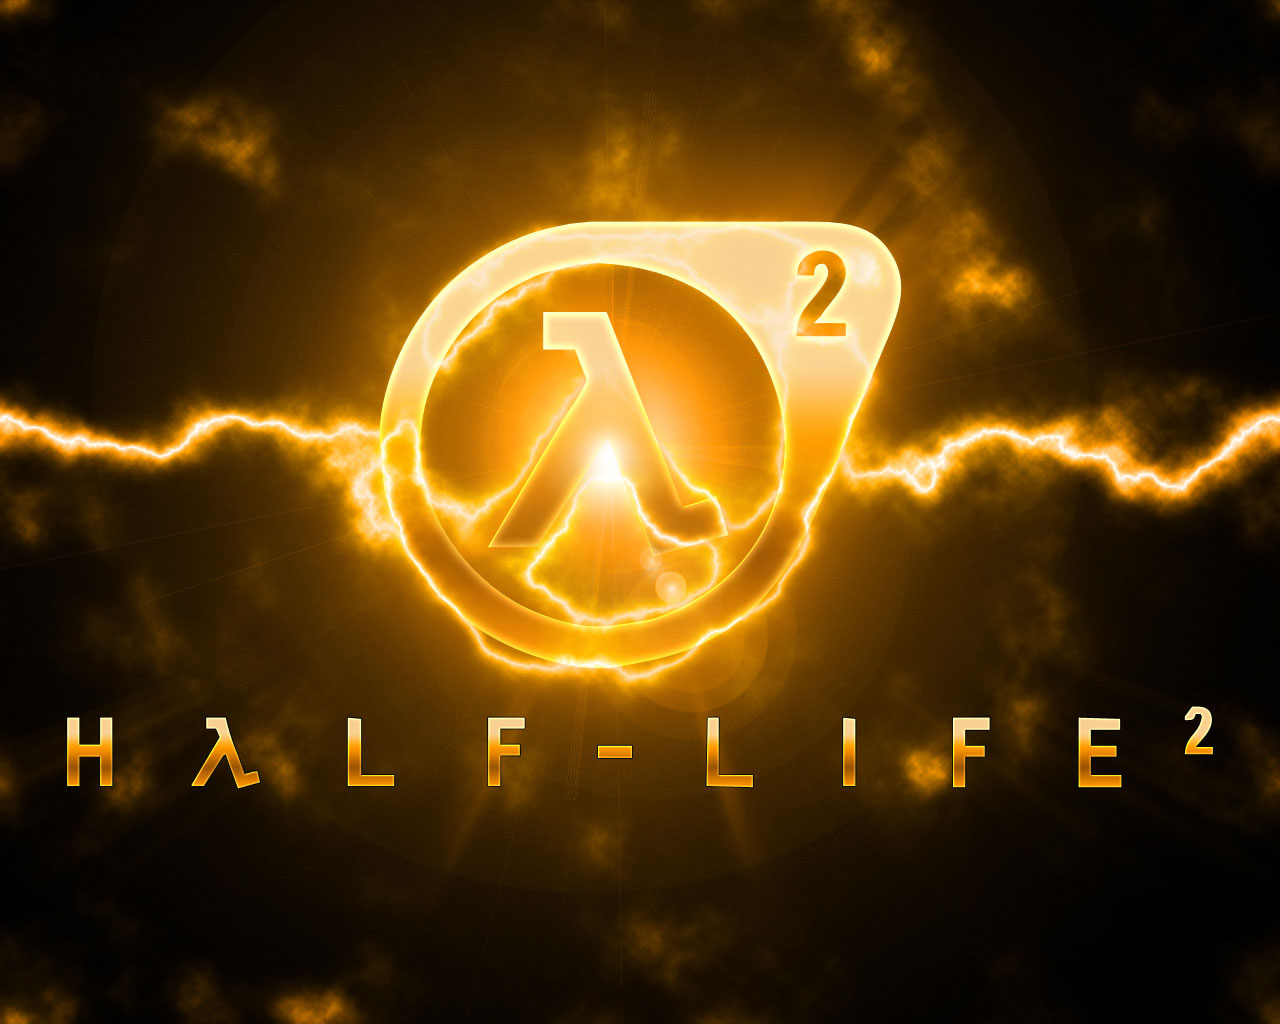 Скачать картинку Видеоигры, Half Life 2 в телефон бесплатно.